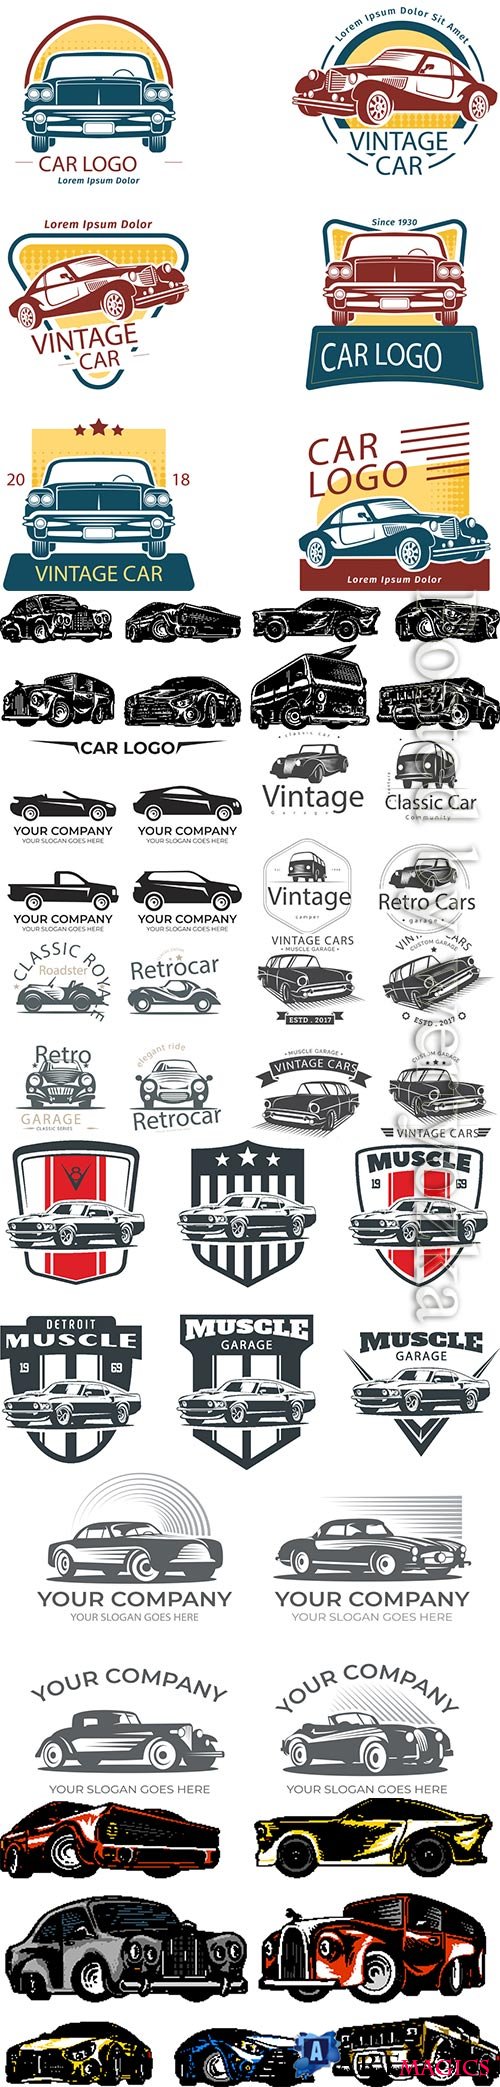 Car logo vector collection